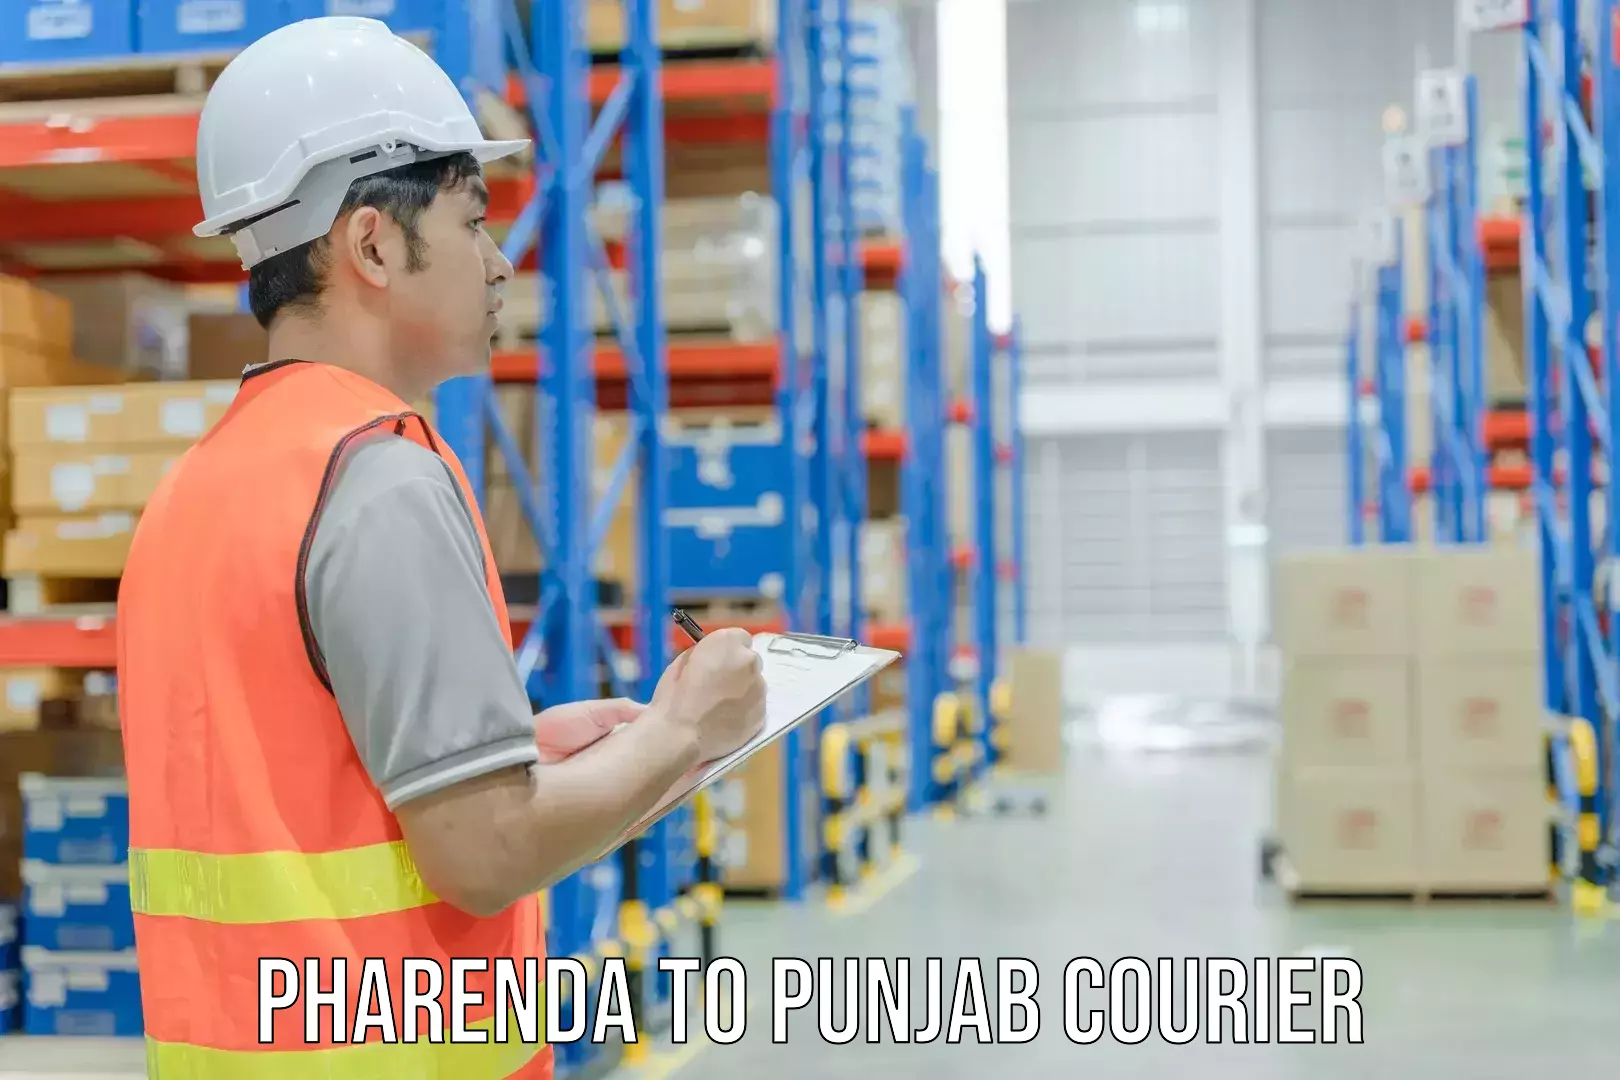 Full-service courier options Pharenda to Barnala